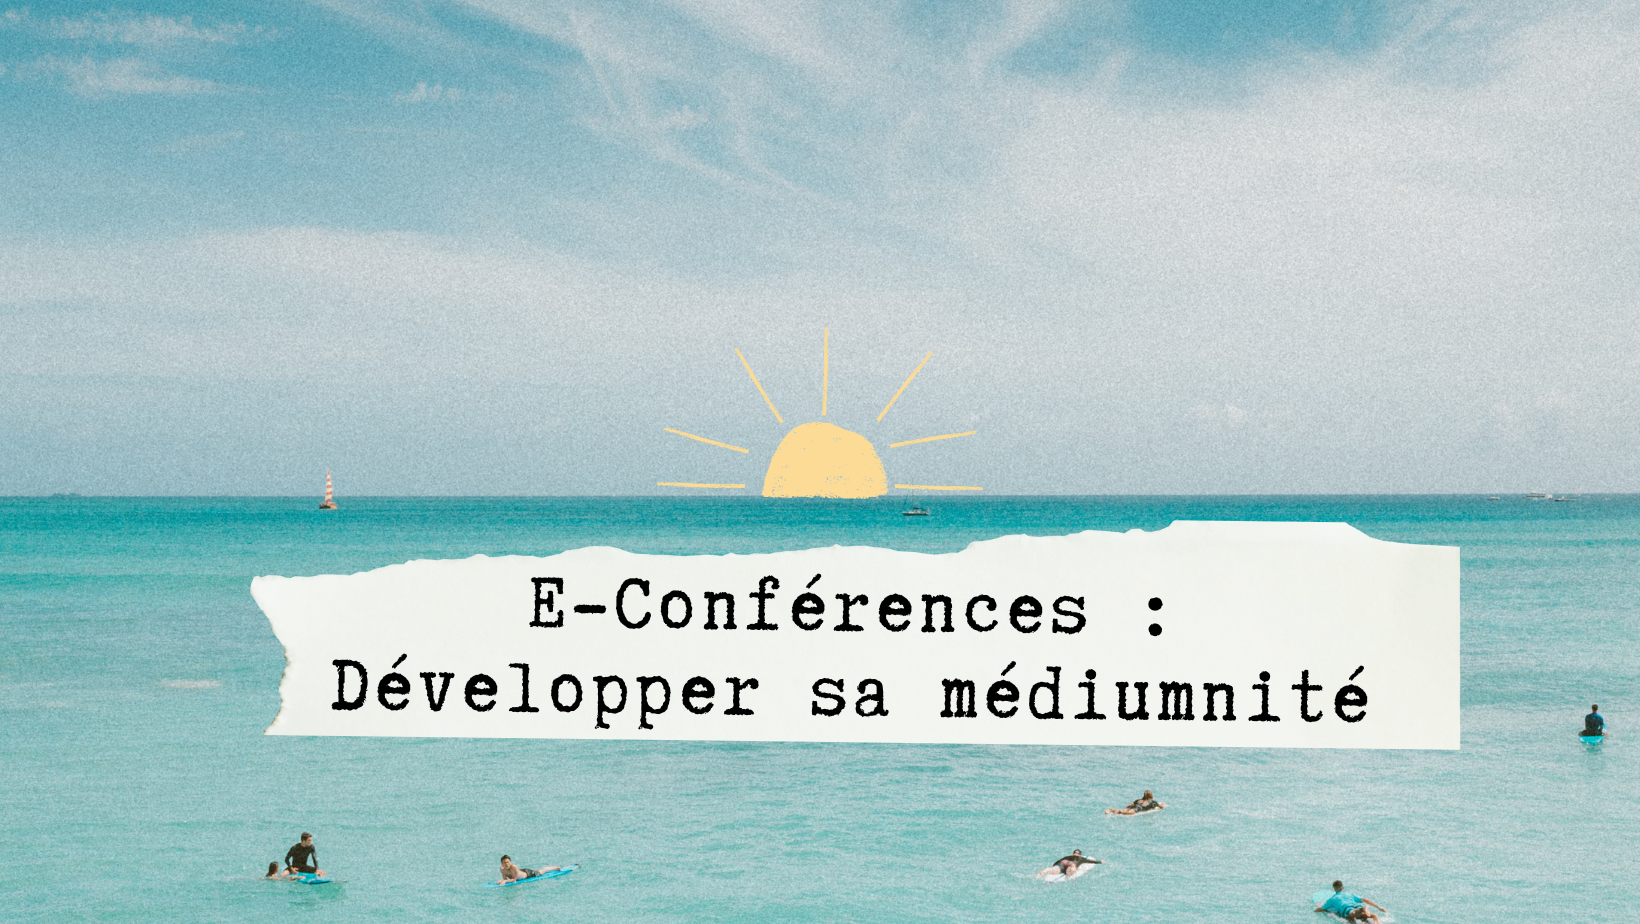 E-Conférences : Développer sa médiumnité